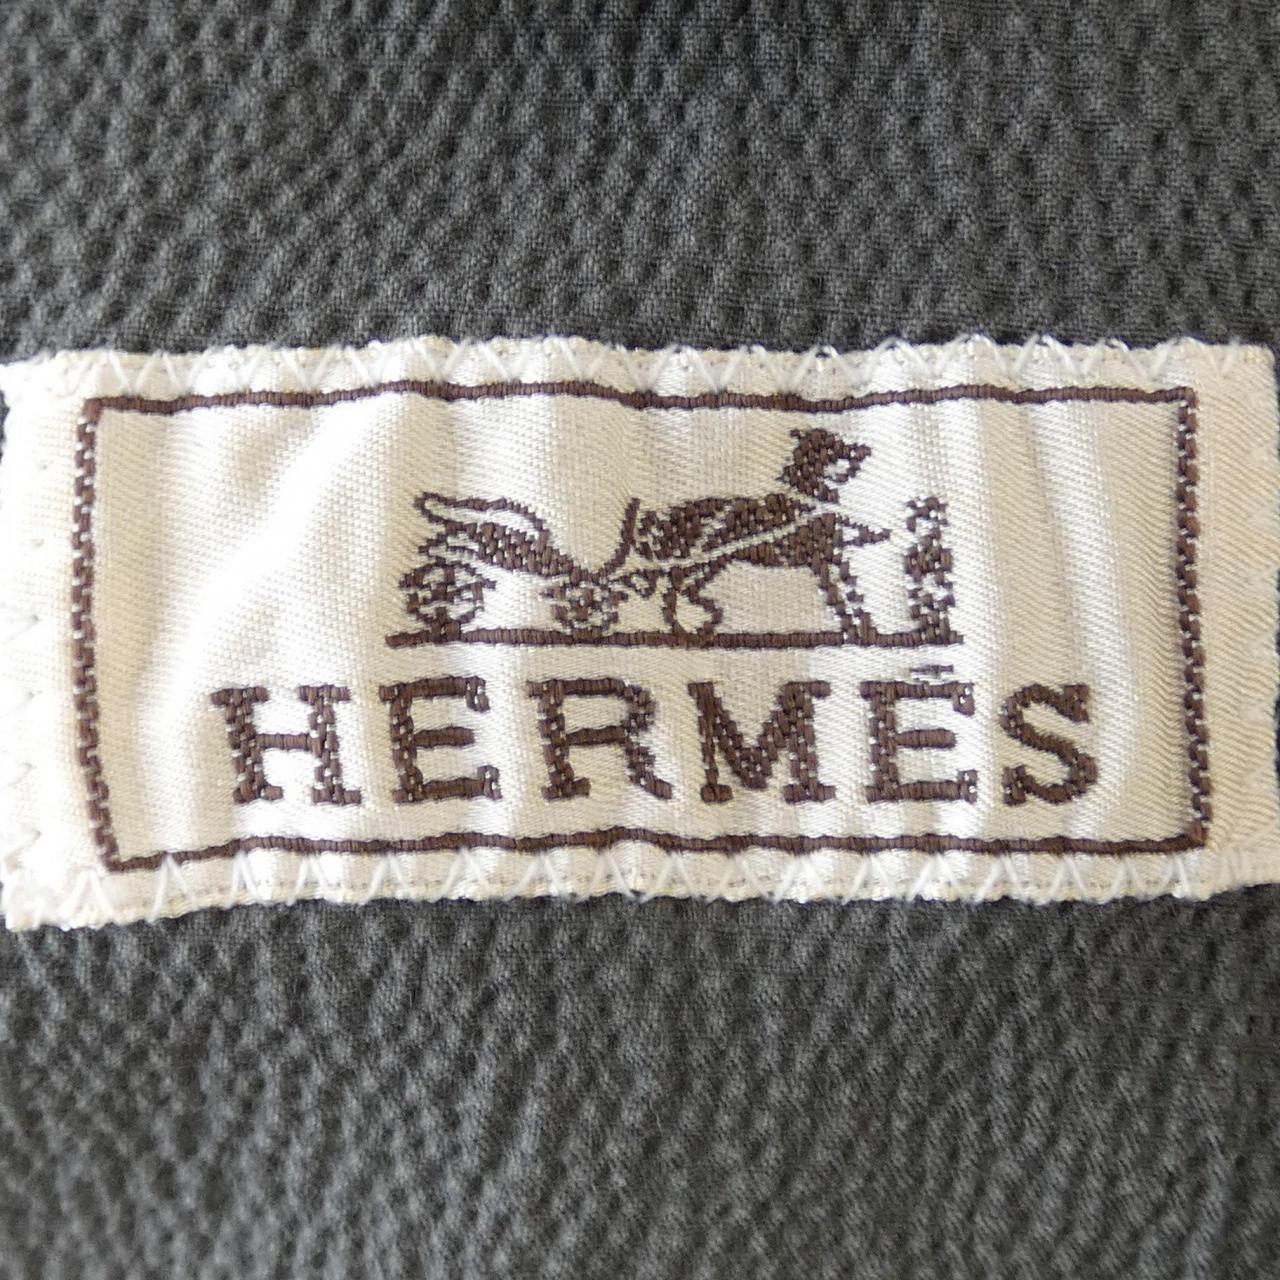 HERMES愛馬仕夾克